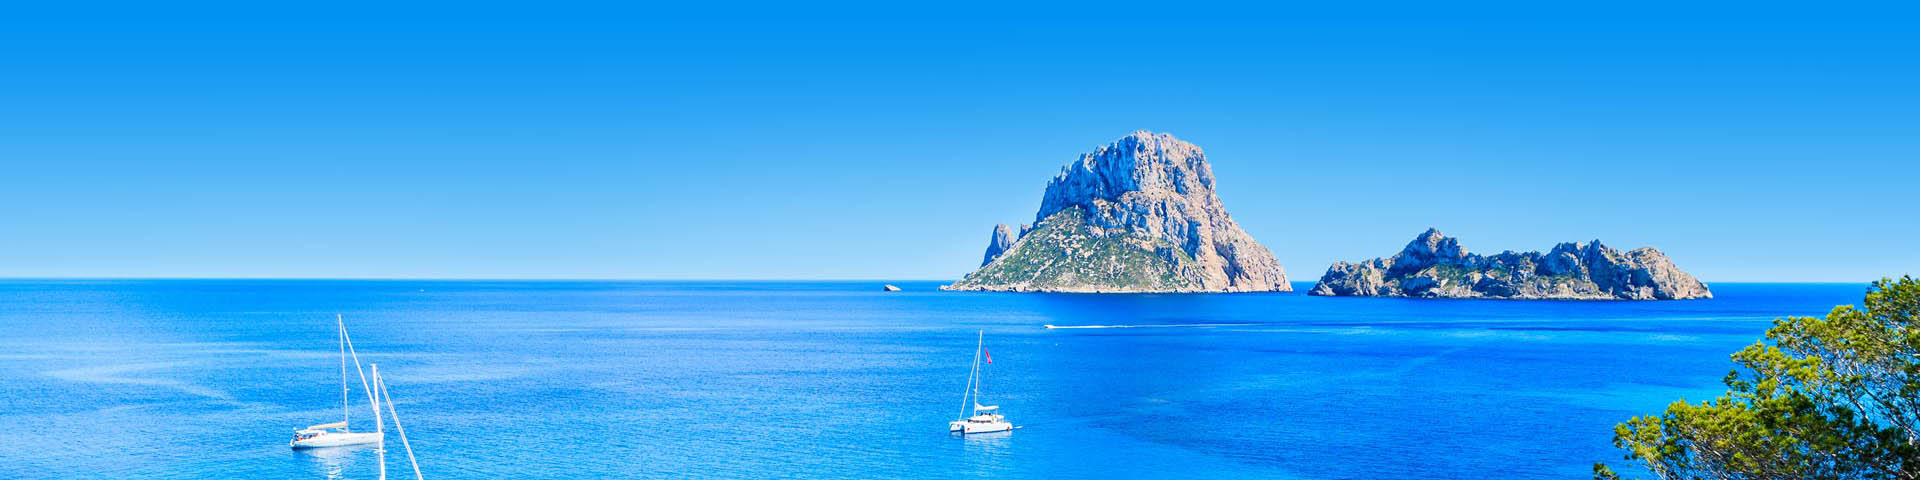 Alle last minute vakanties naar Ibiza bij Prijsvrij Vakanties